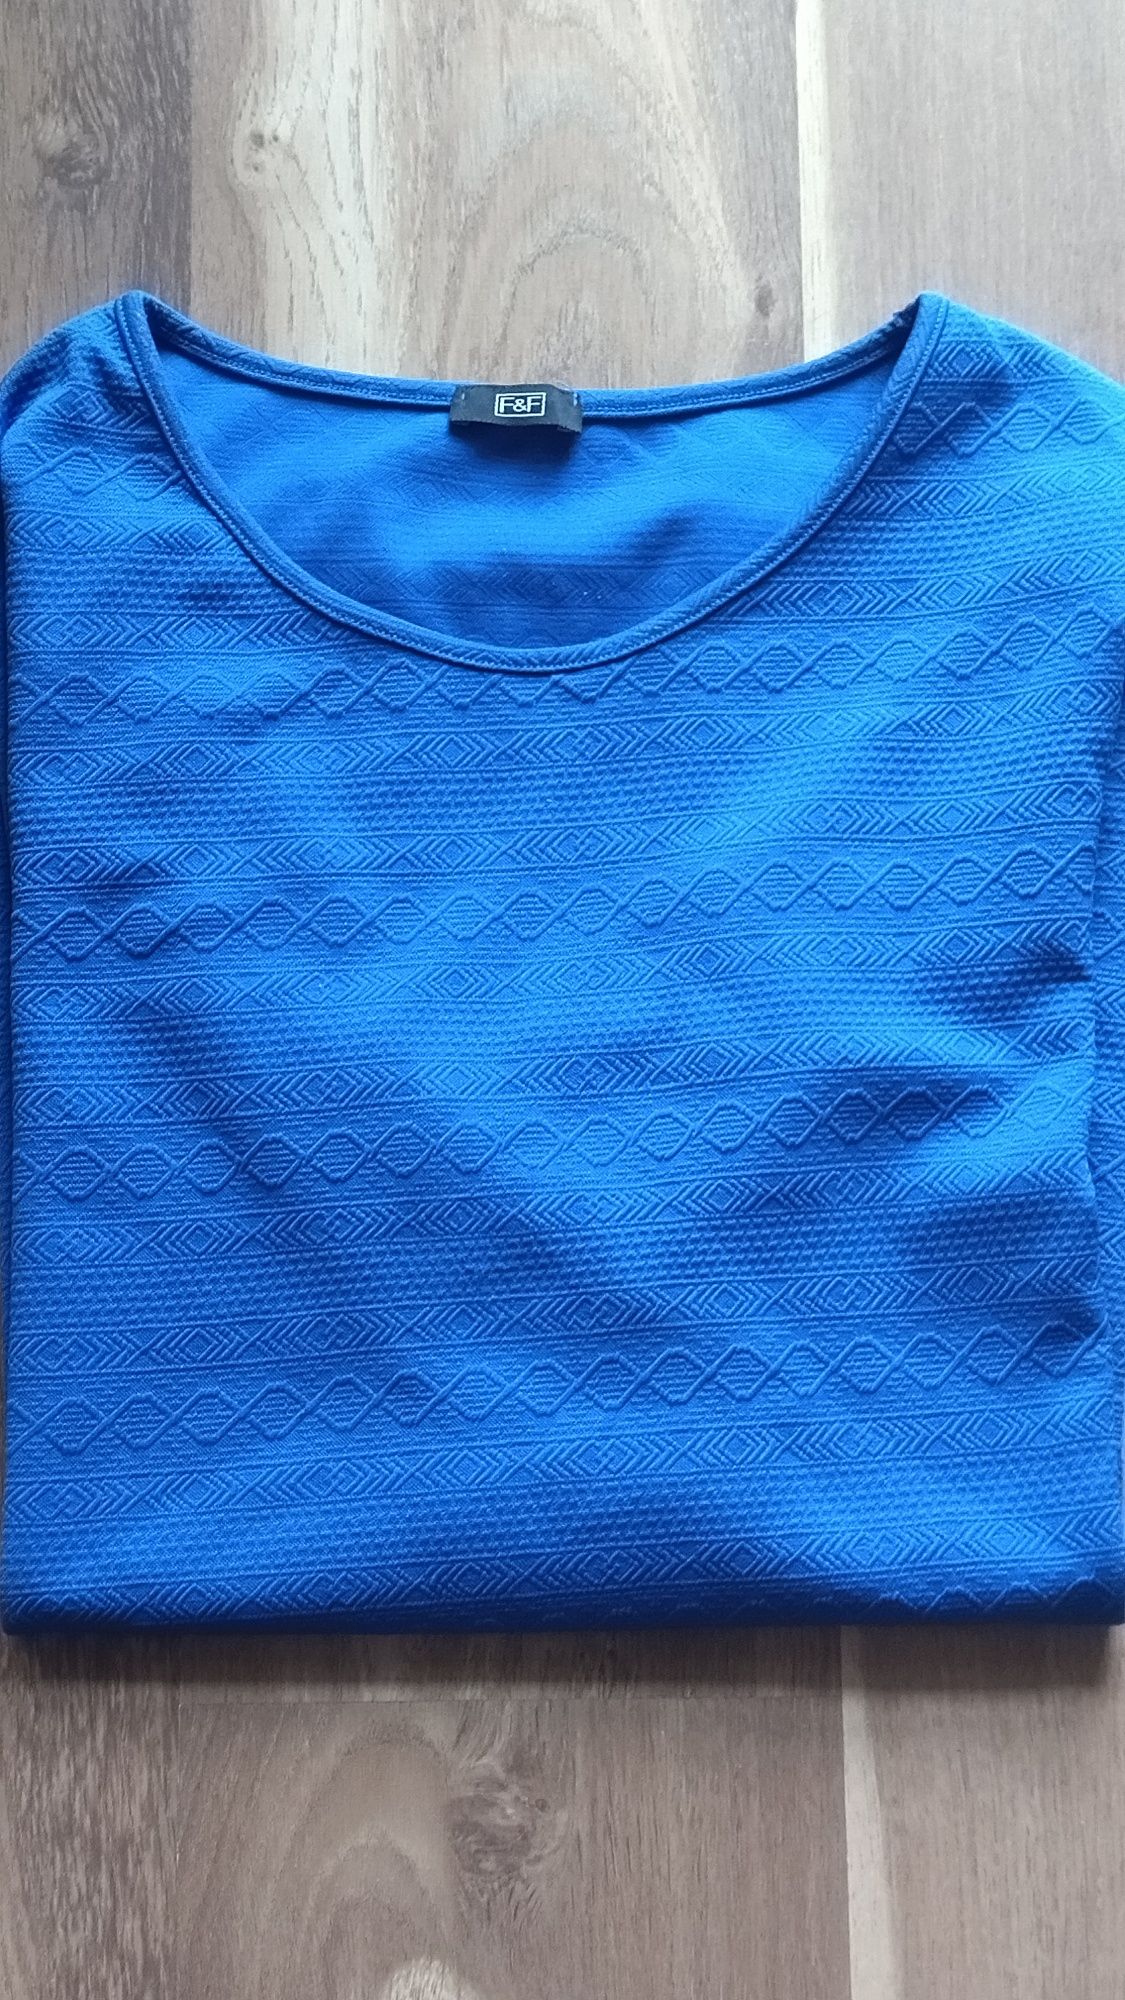 Tunika bluzka firmy F&F dla puszystej Pani roz. 48